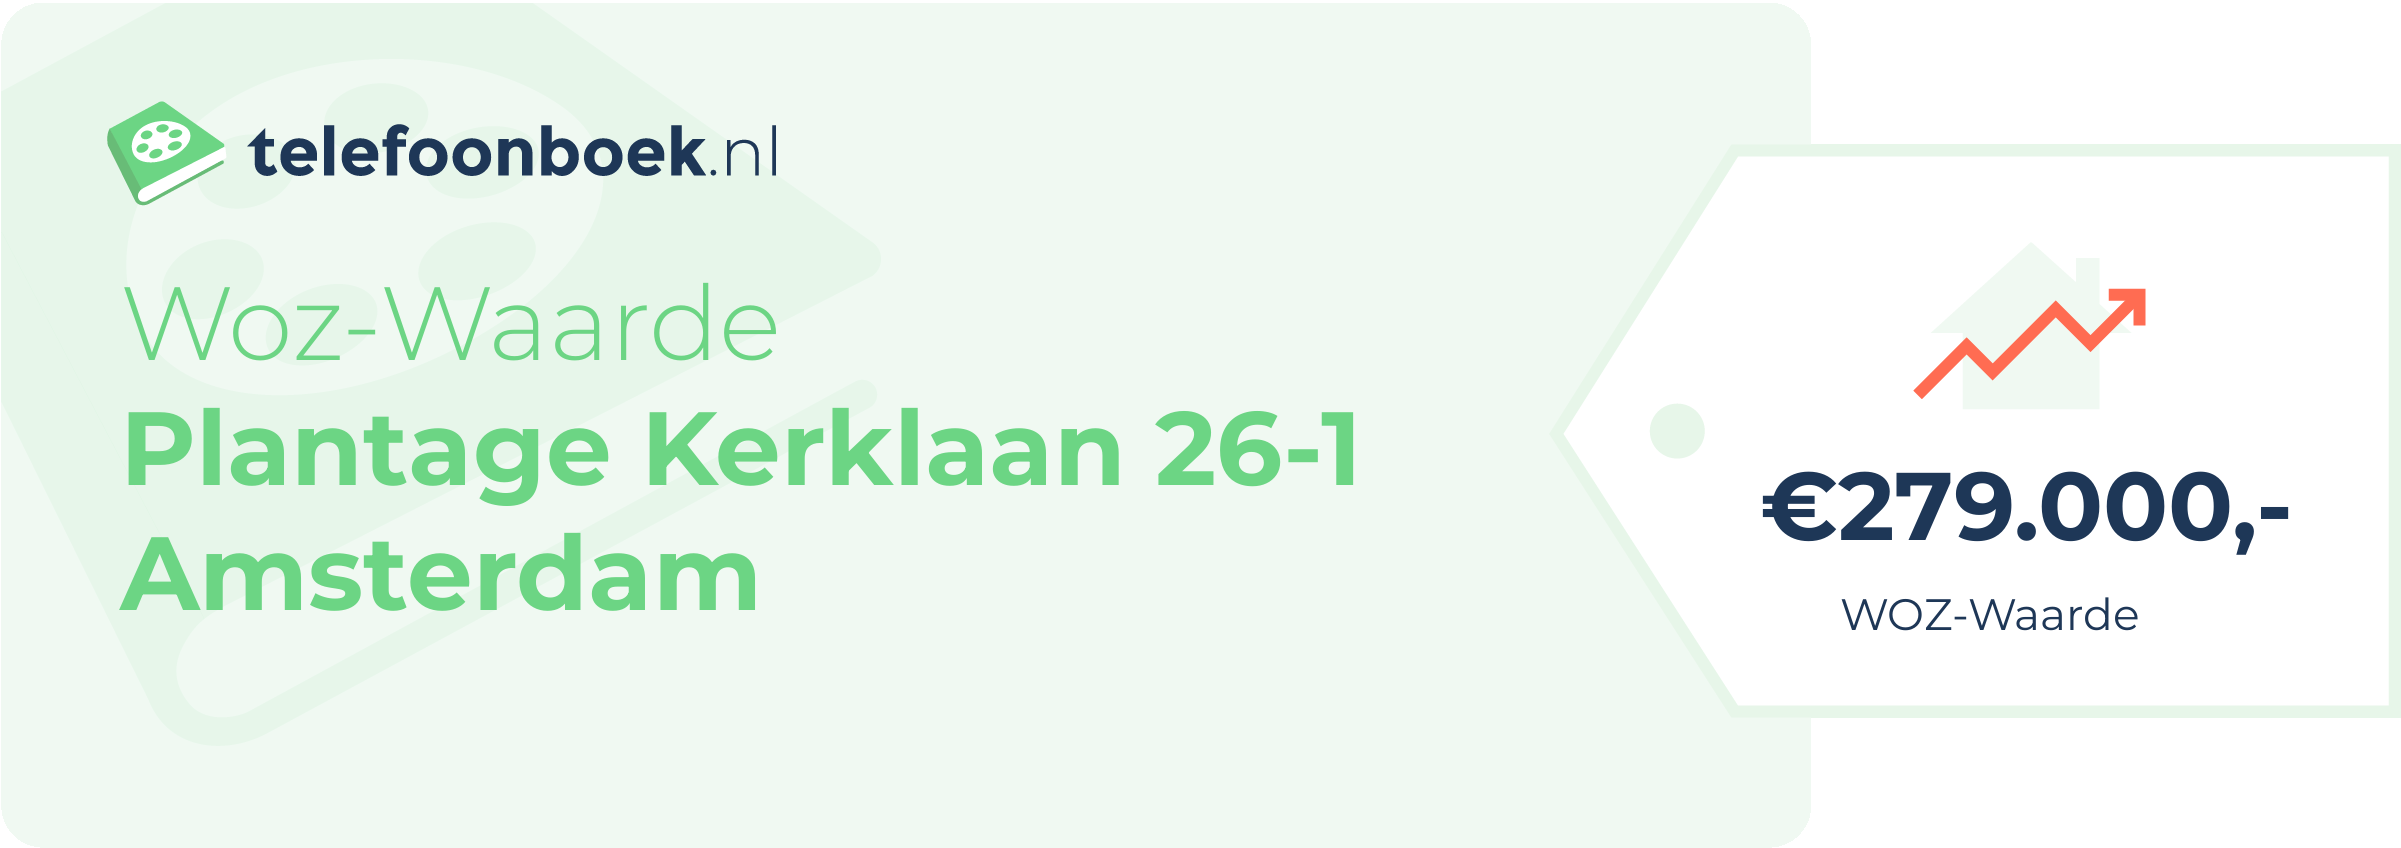 WOZ-waarde Plantage Kerklaan 26-1 Amsterdam